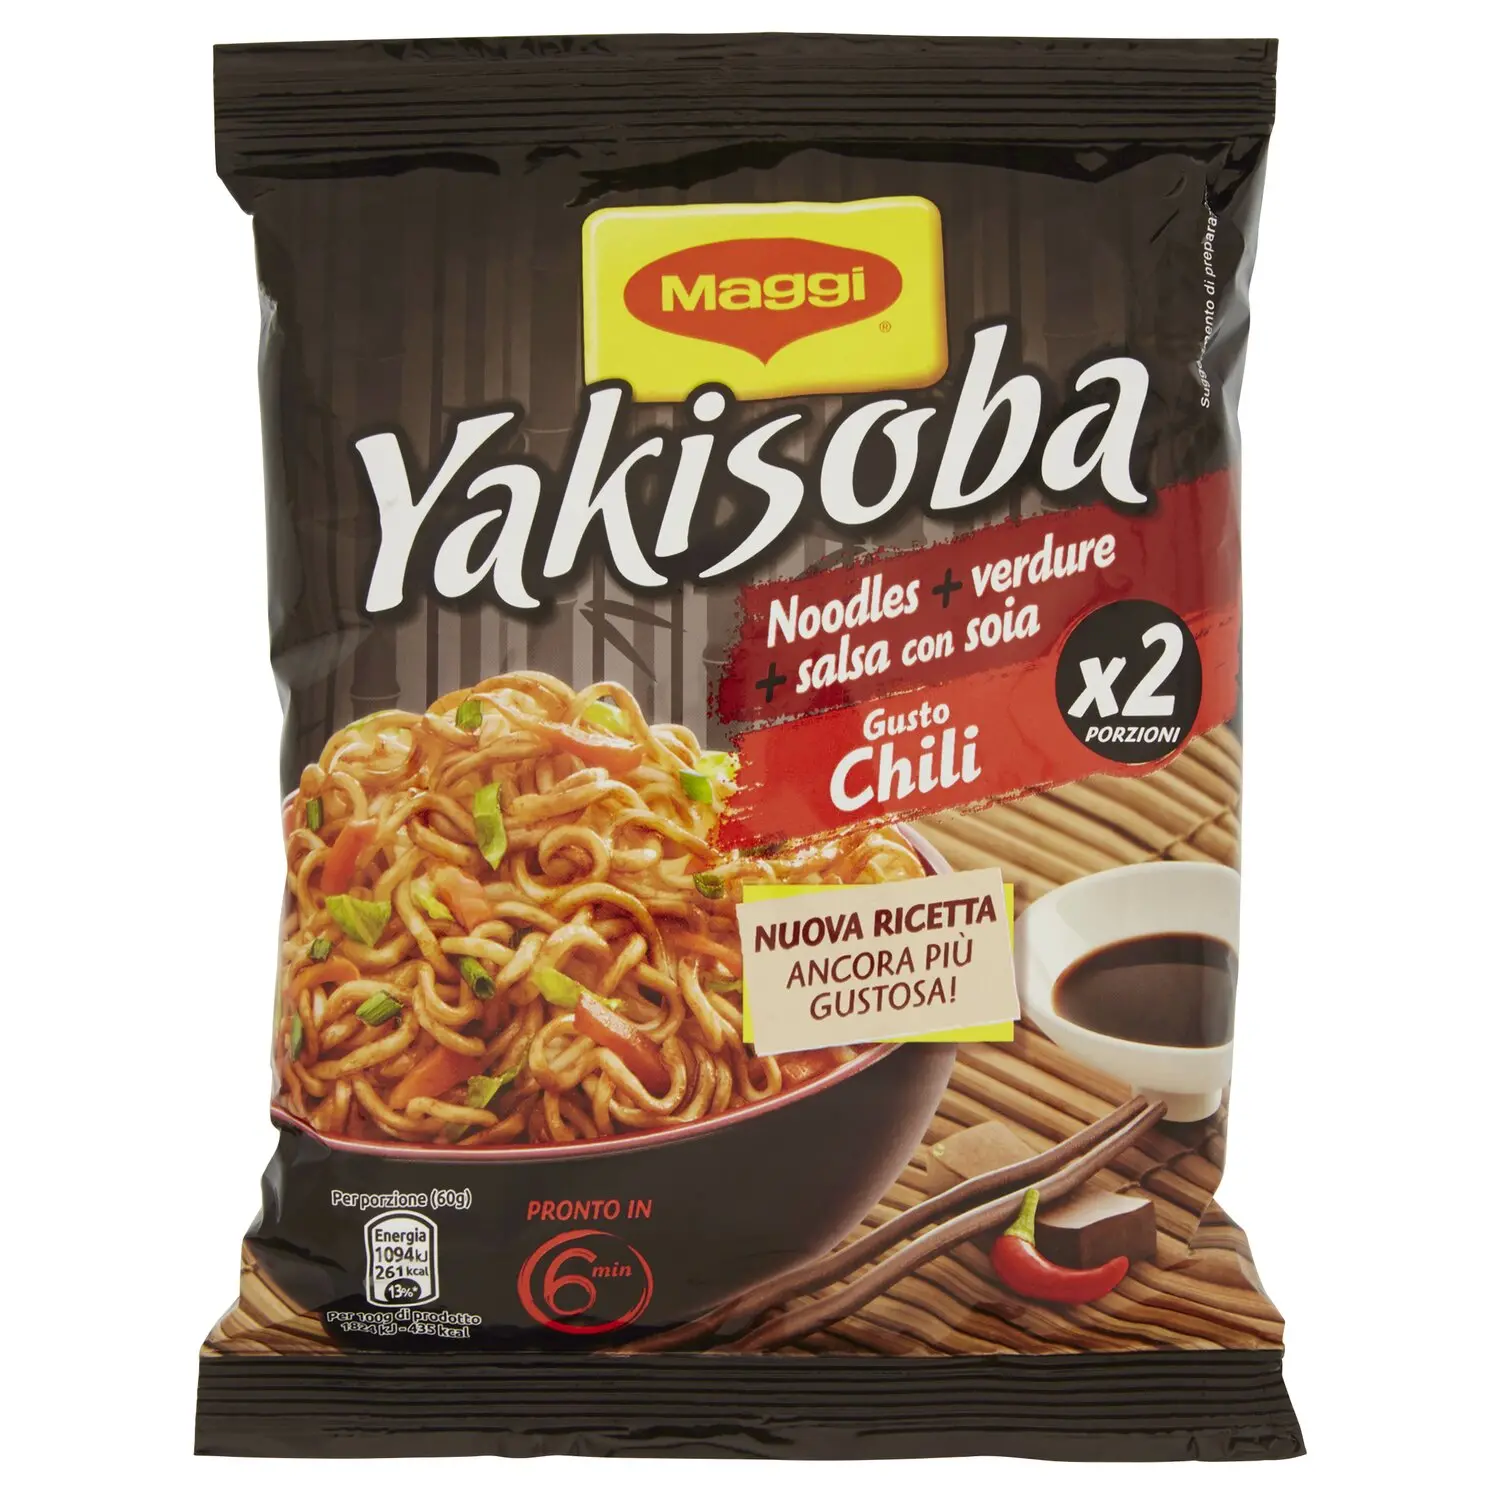 BUITONI IDEA PER YAKISOBA GUSTO CHILI Noodles istantanei verdure salsa con  soia 2 porzioni